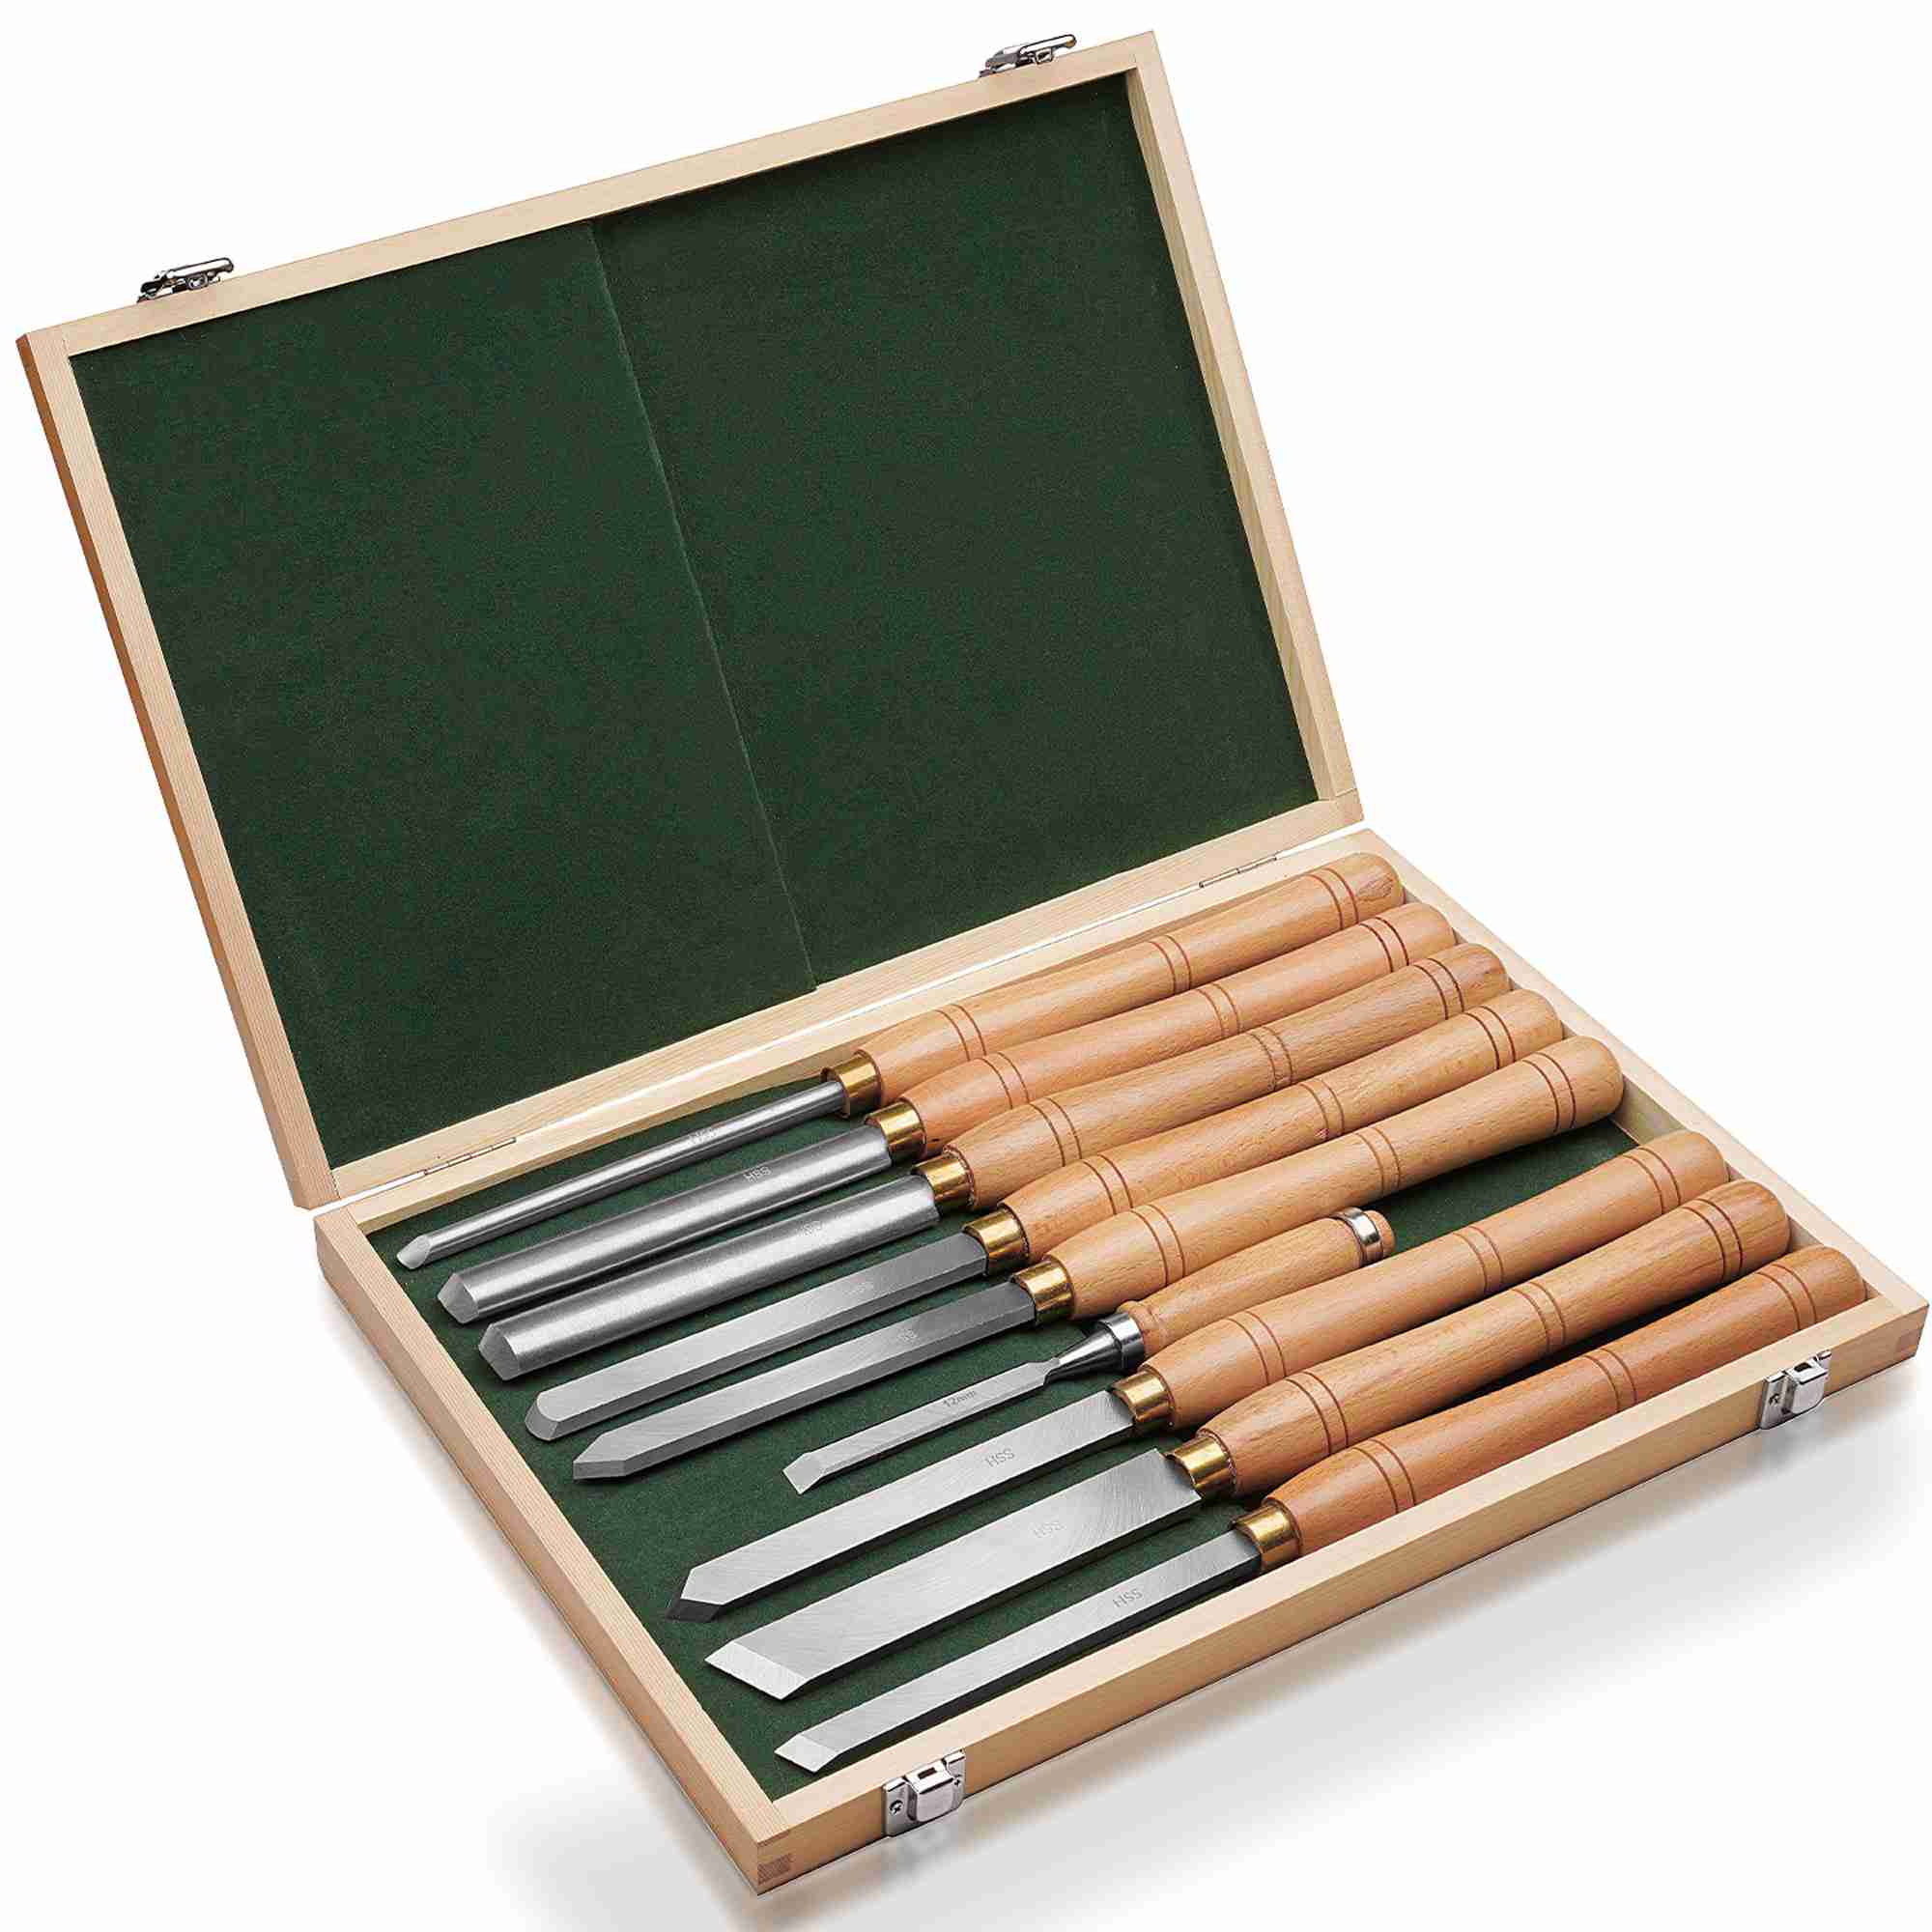 wood-lathe-tools-lathe-chisel-set-wood-lathe-tools for cheap